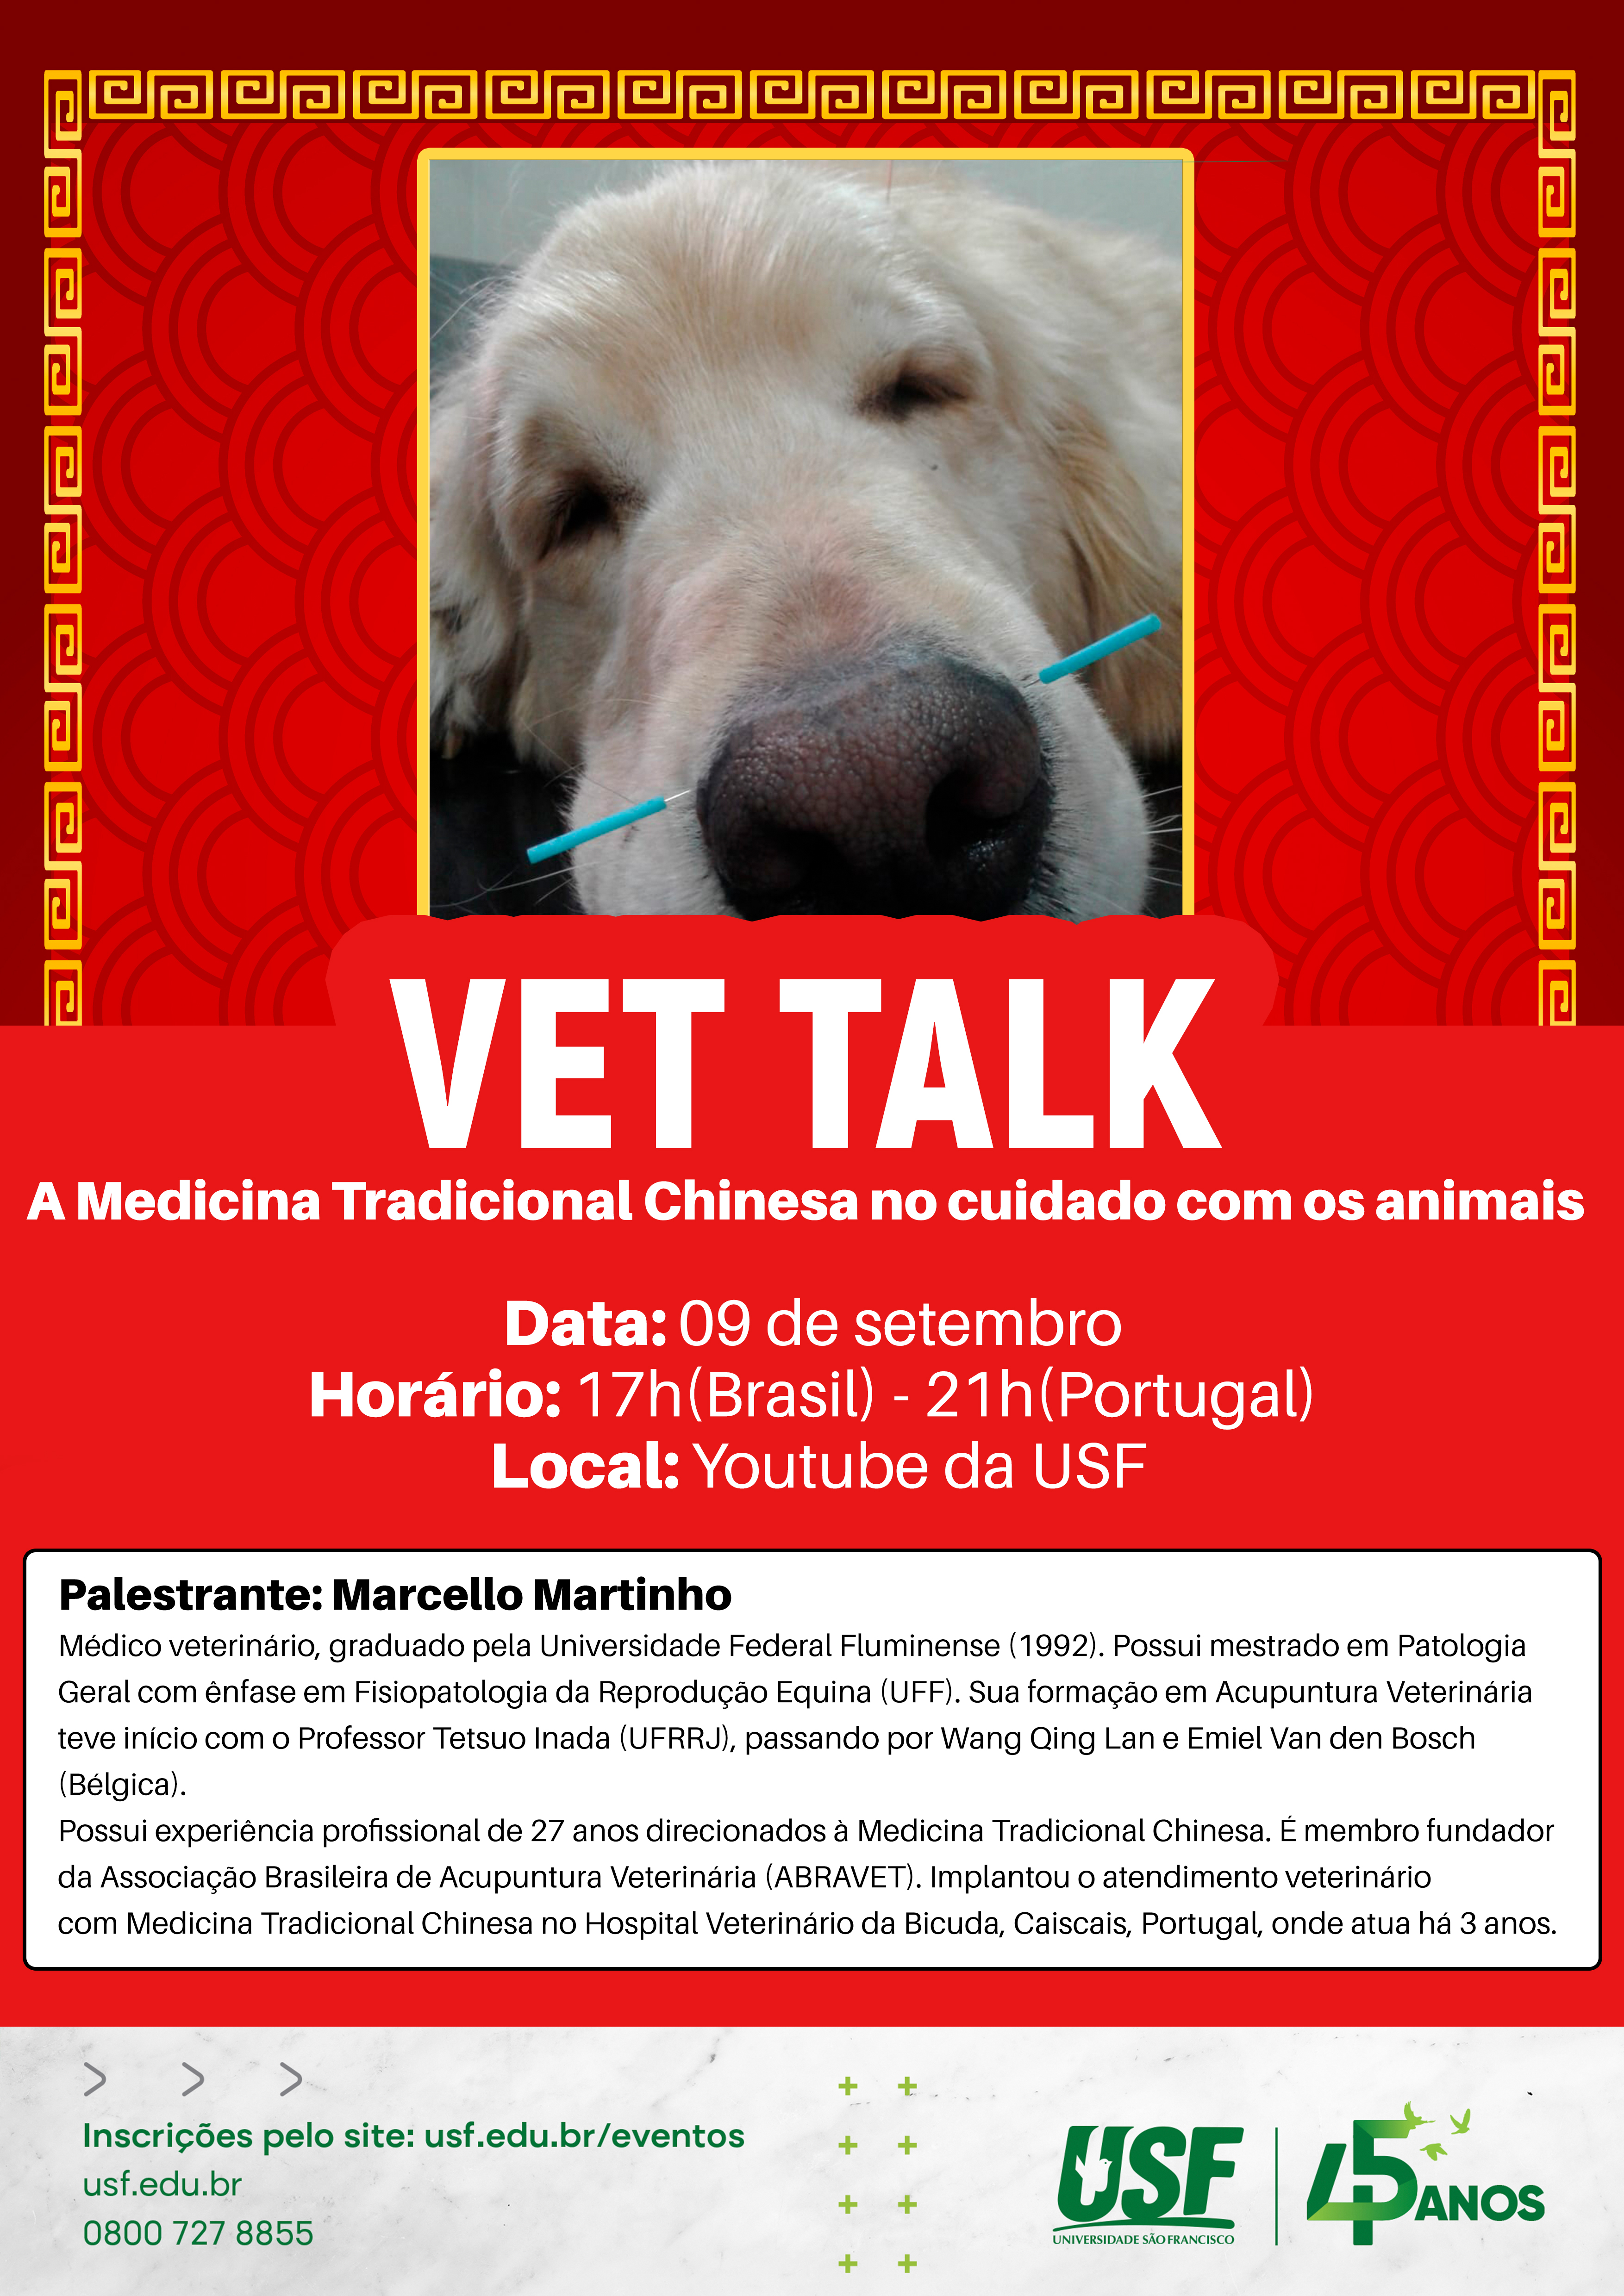 Vet Talk: A Medicina Tradicional Chinesa no cuidado com os animais